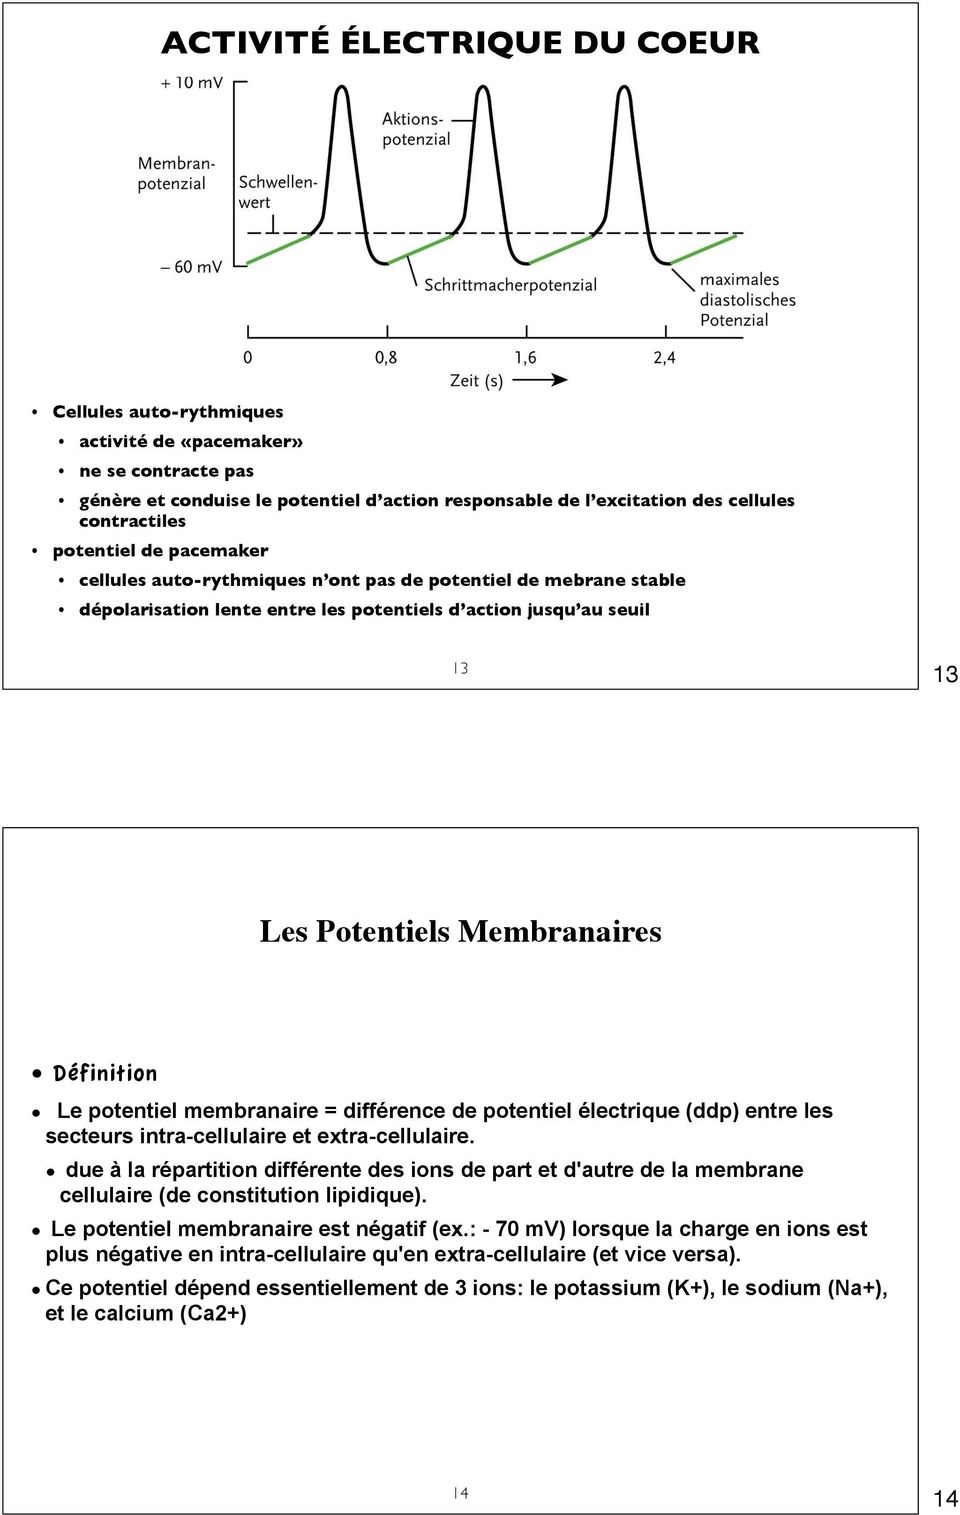 Le potentiel membranaire = différence de potentiel électrique (ddp) entre les secteurs intra-cellulaire et extra-cellulaire.